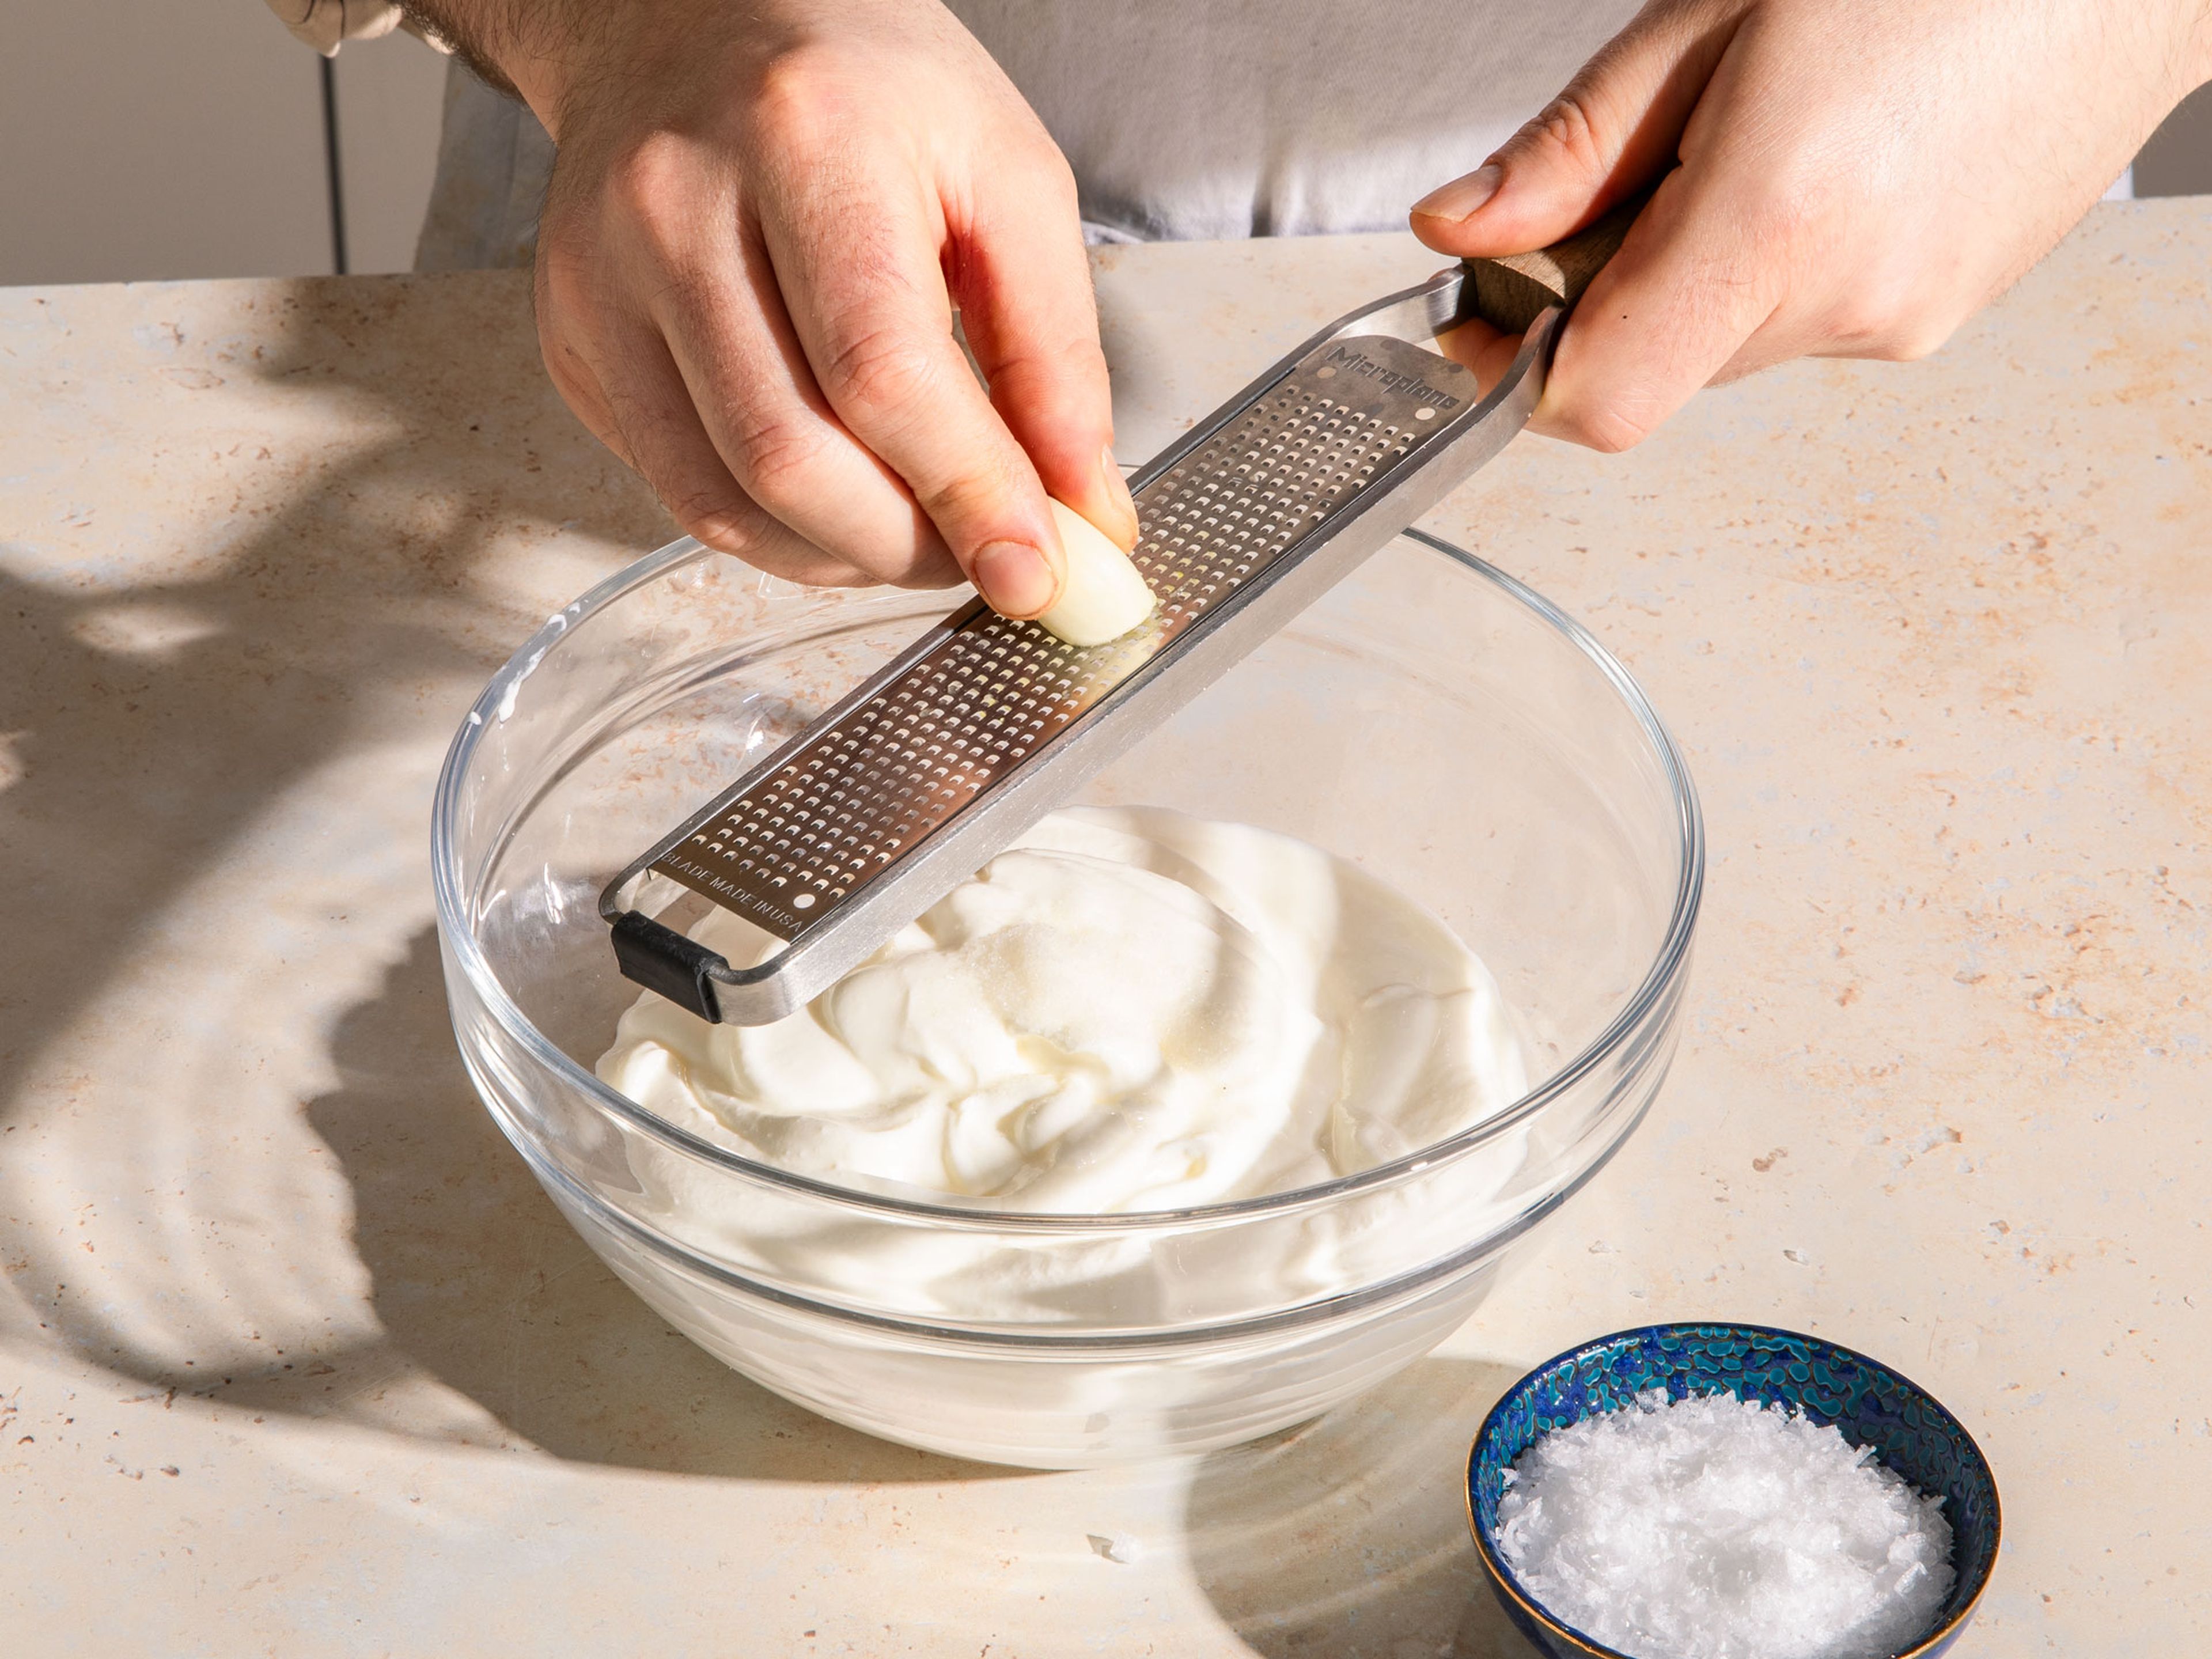 Joghurt in eine Schüssel geben, etwas Salz hinzufügen und Knoblauch mit einer Reibe hineinreiben und umrühren. Den gemischten Joghurt mit einem Küchenspatel in ein sauberes Küchen- oder Käsetuch geben, das Tuch zudrehen und über einer Schüssel zum Abtropfen aufhängen. Dieser Schritt kann auch am Abend vorbereitet und im Kühlschrank aufbewahrt werden.